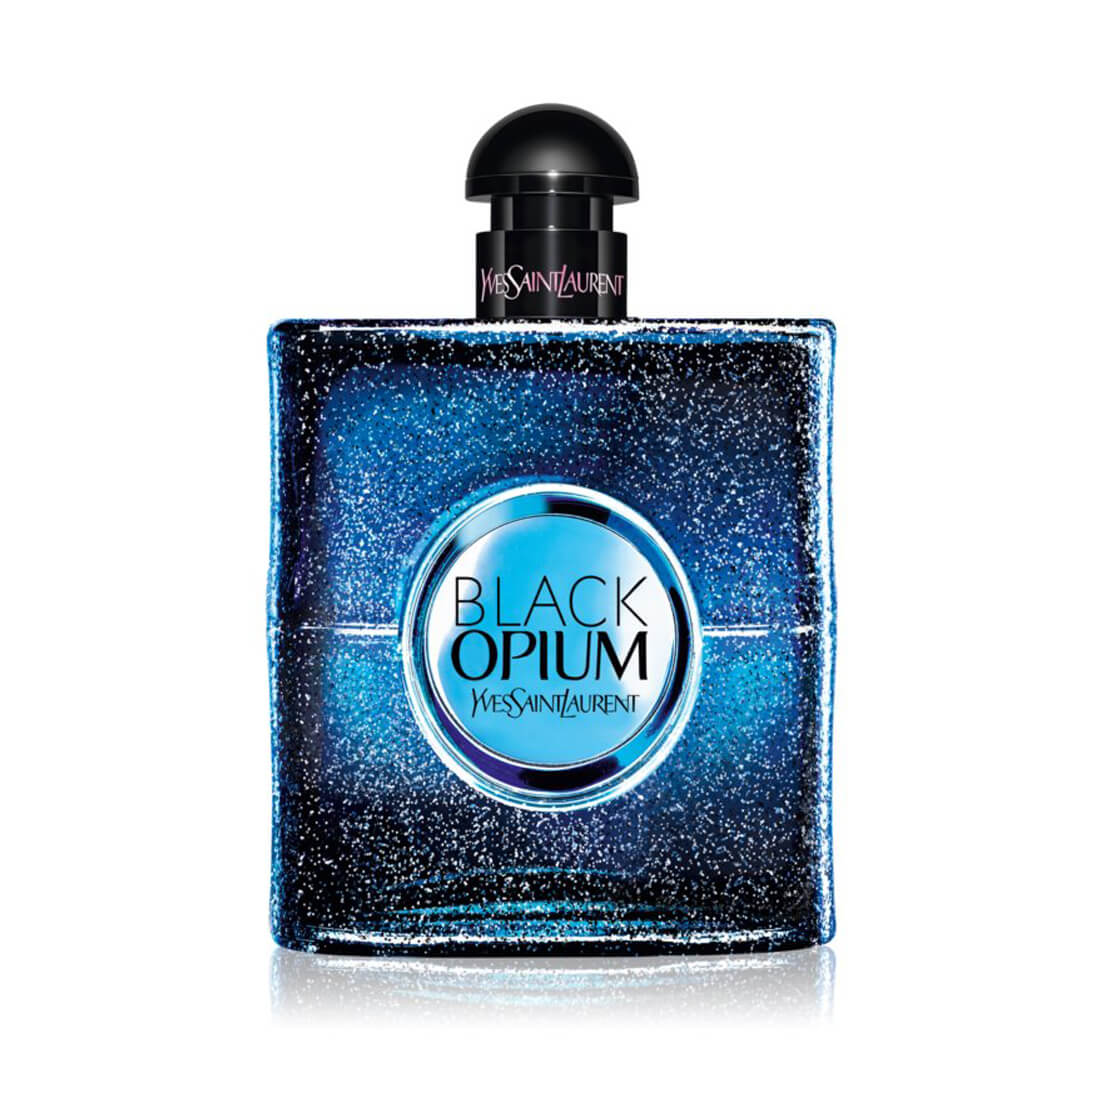 Yves Saint Laurent Black Opium Intense Eau De Perfume For Women